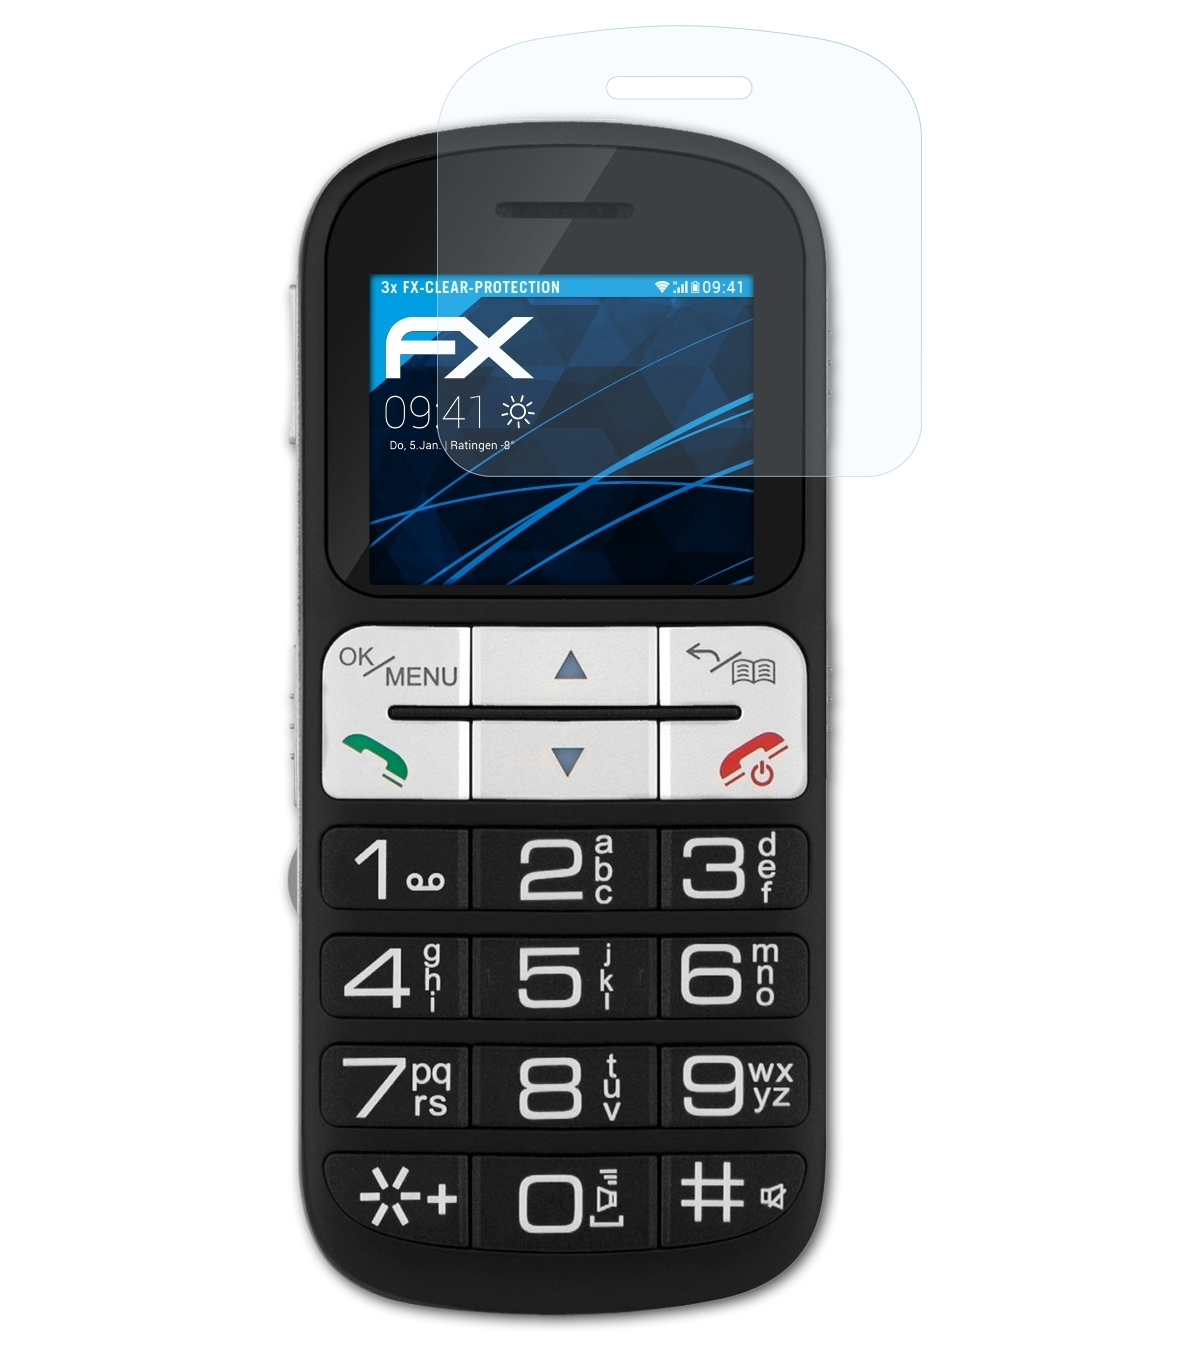 ATFOLIX 3x FX-Clear Displayschutz(für Technisat TechniPhone 2) ISI